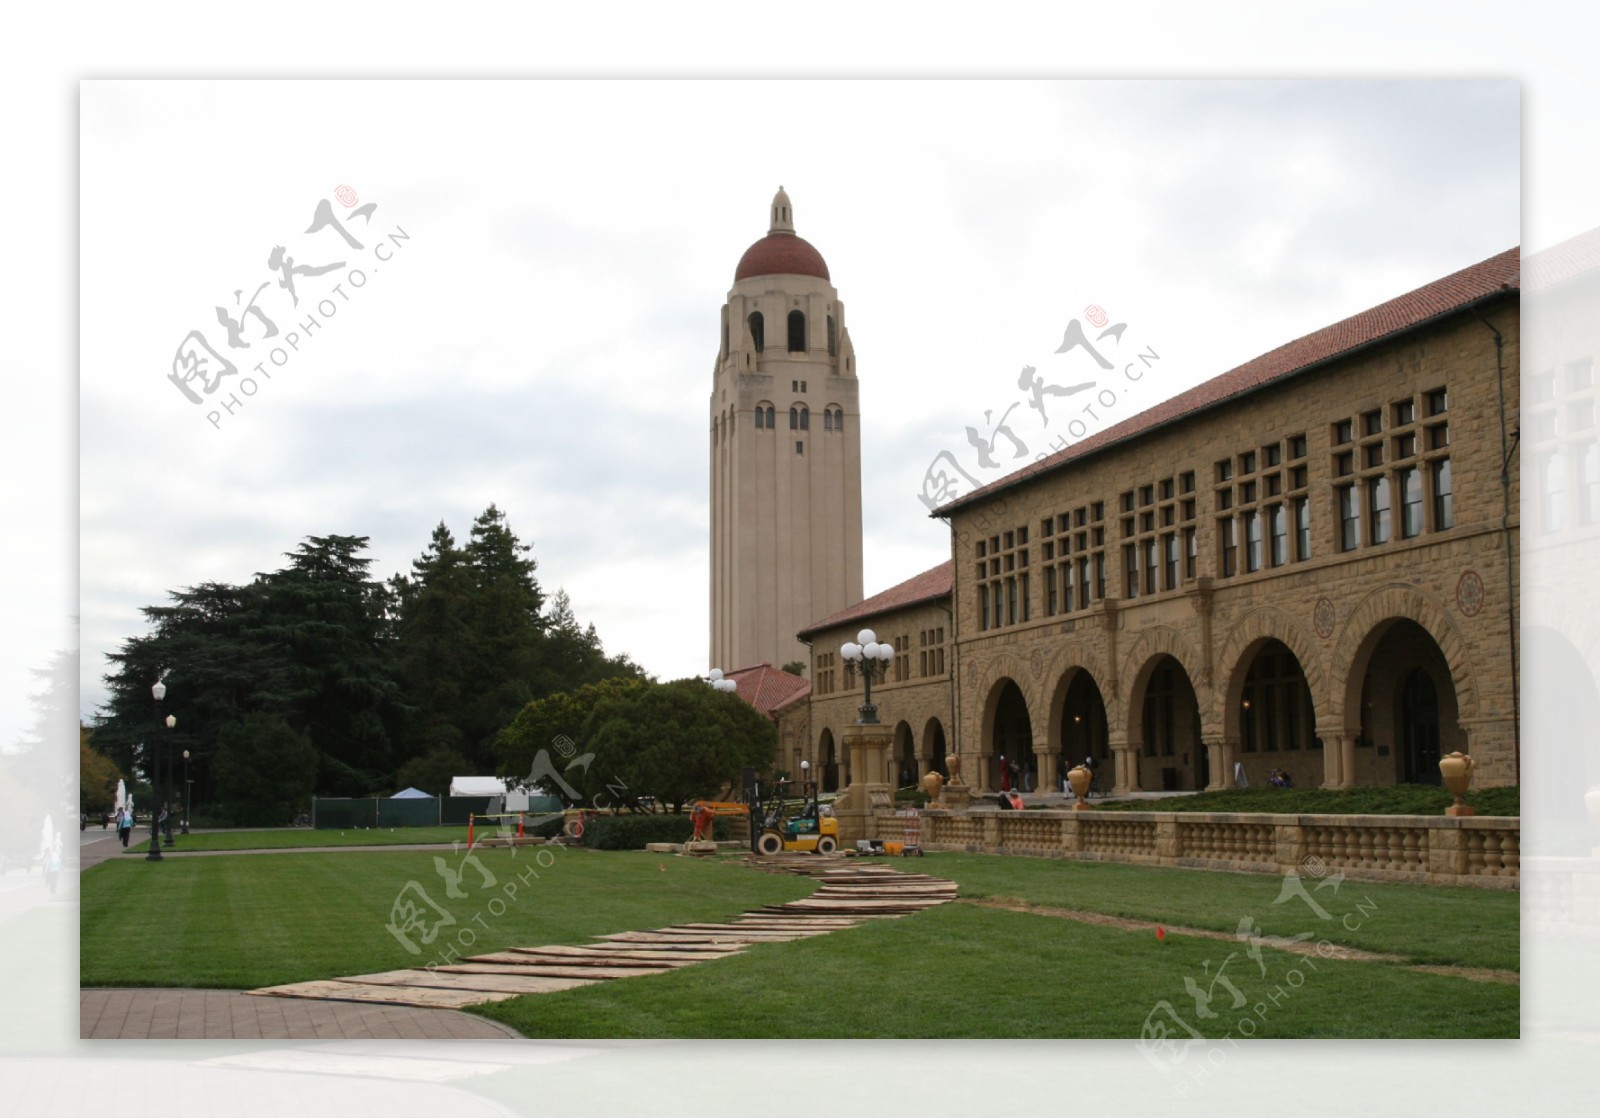 美国斯坦福大学图片